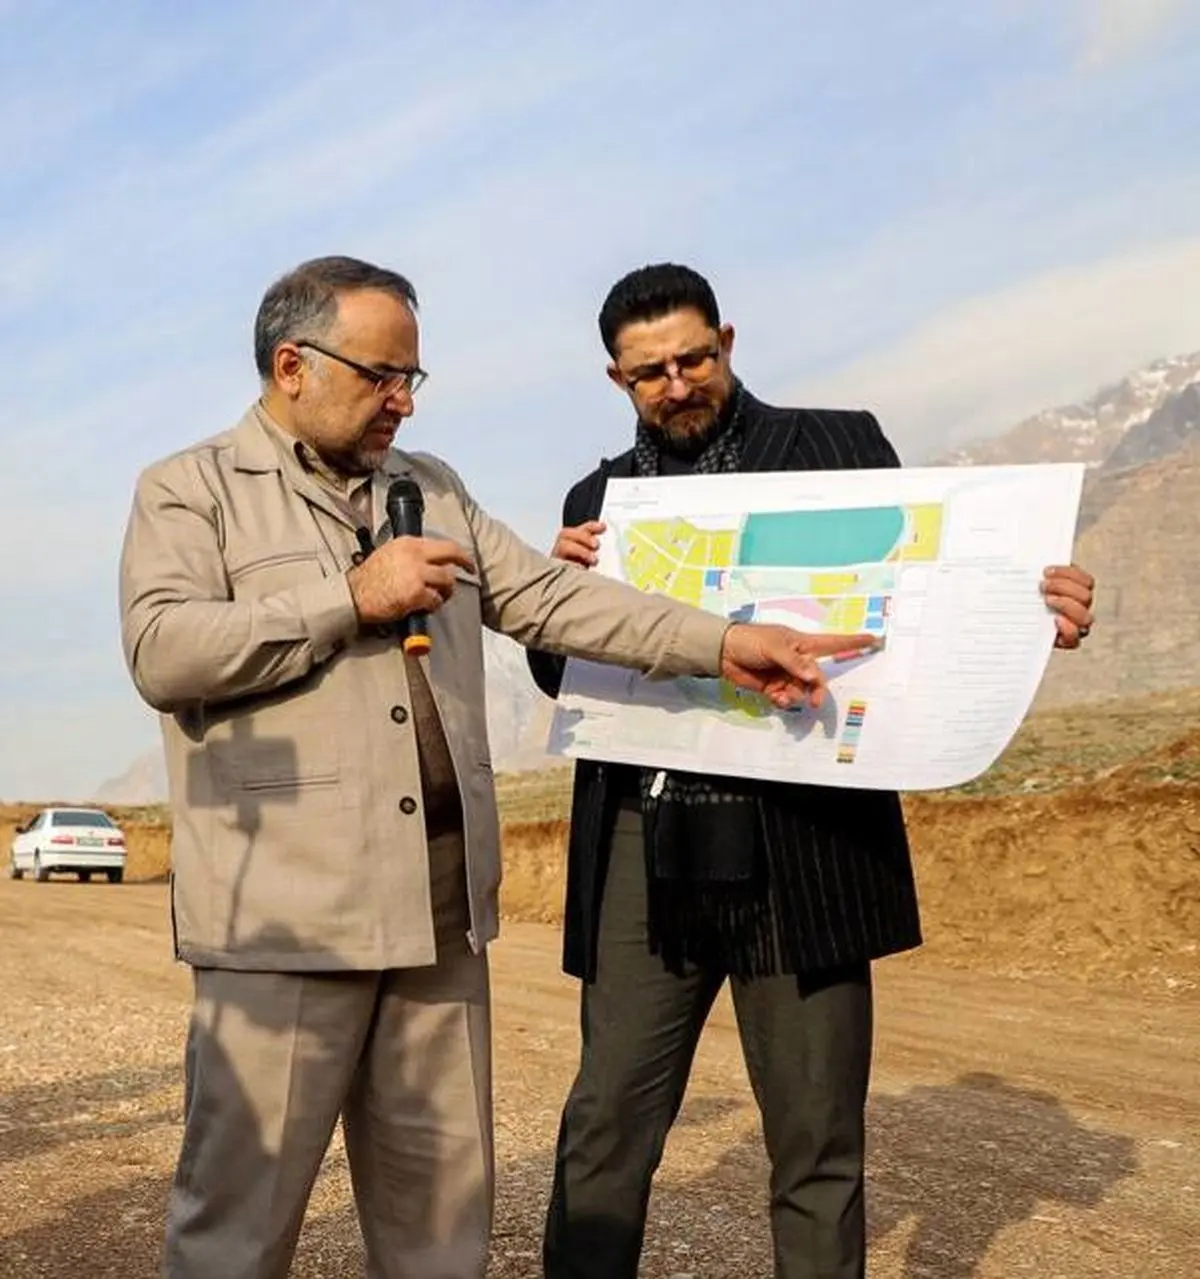 واگذاری زمین رایگان ساخت واحدهای ویلایی در دامنه  کوه تاریخی بیستون

